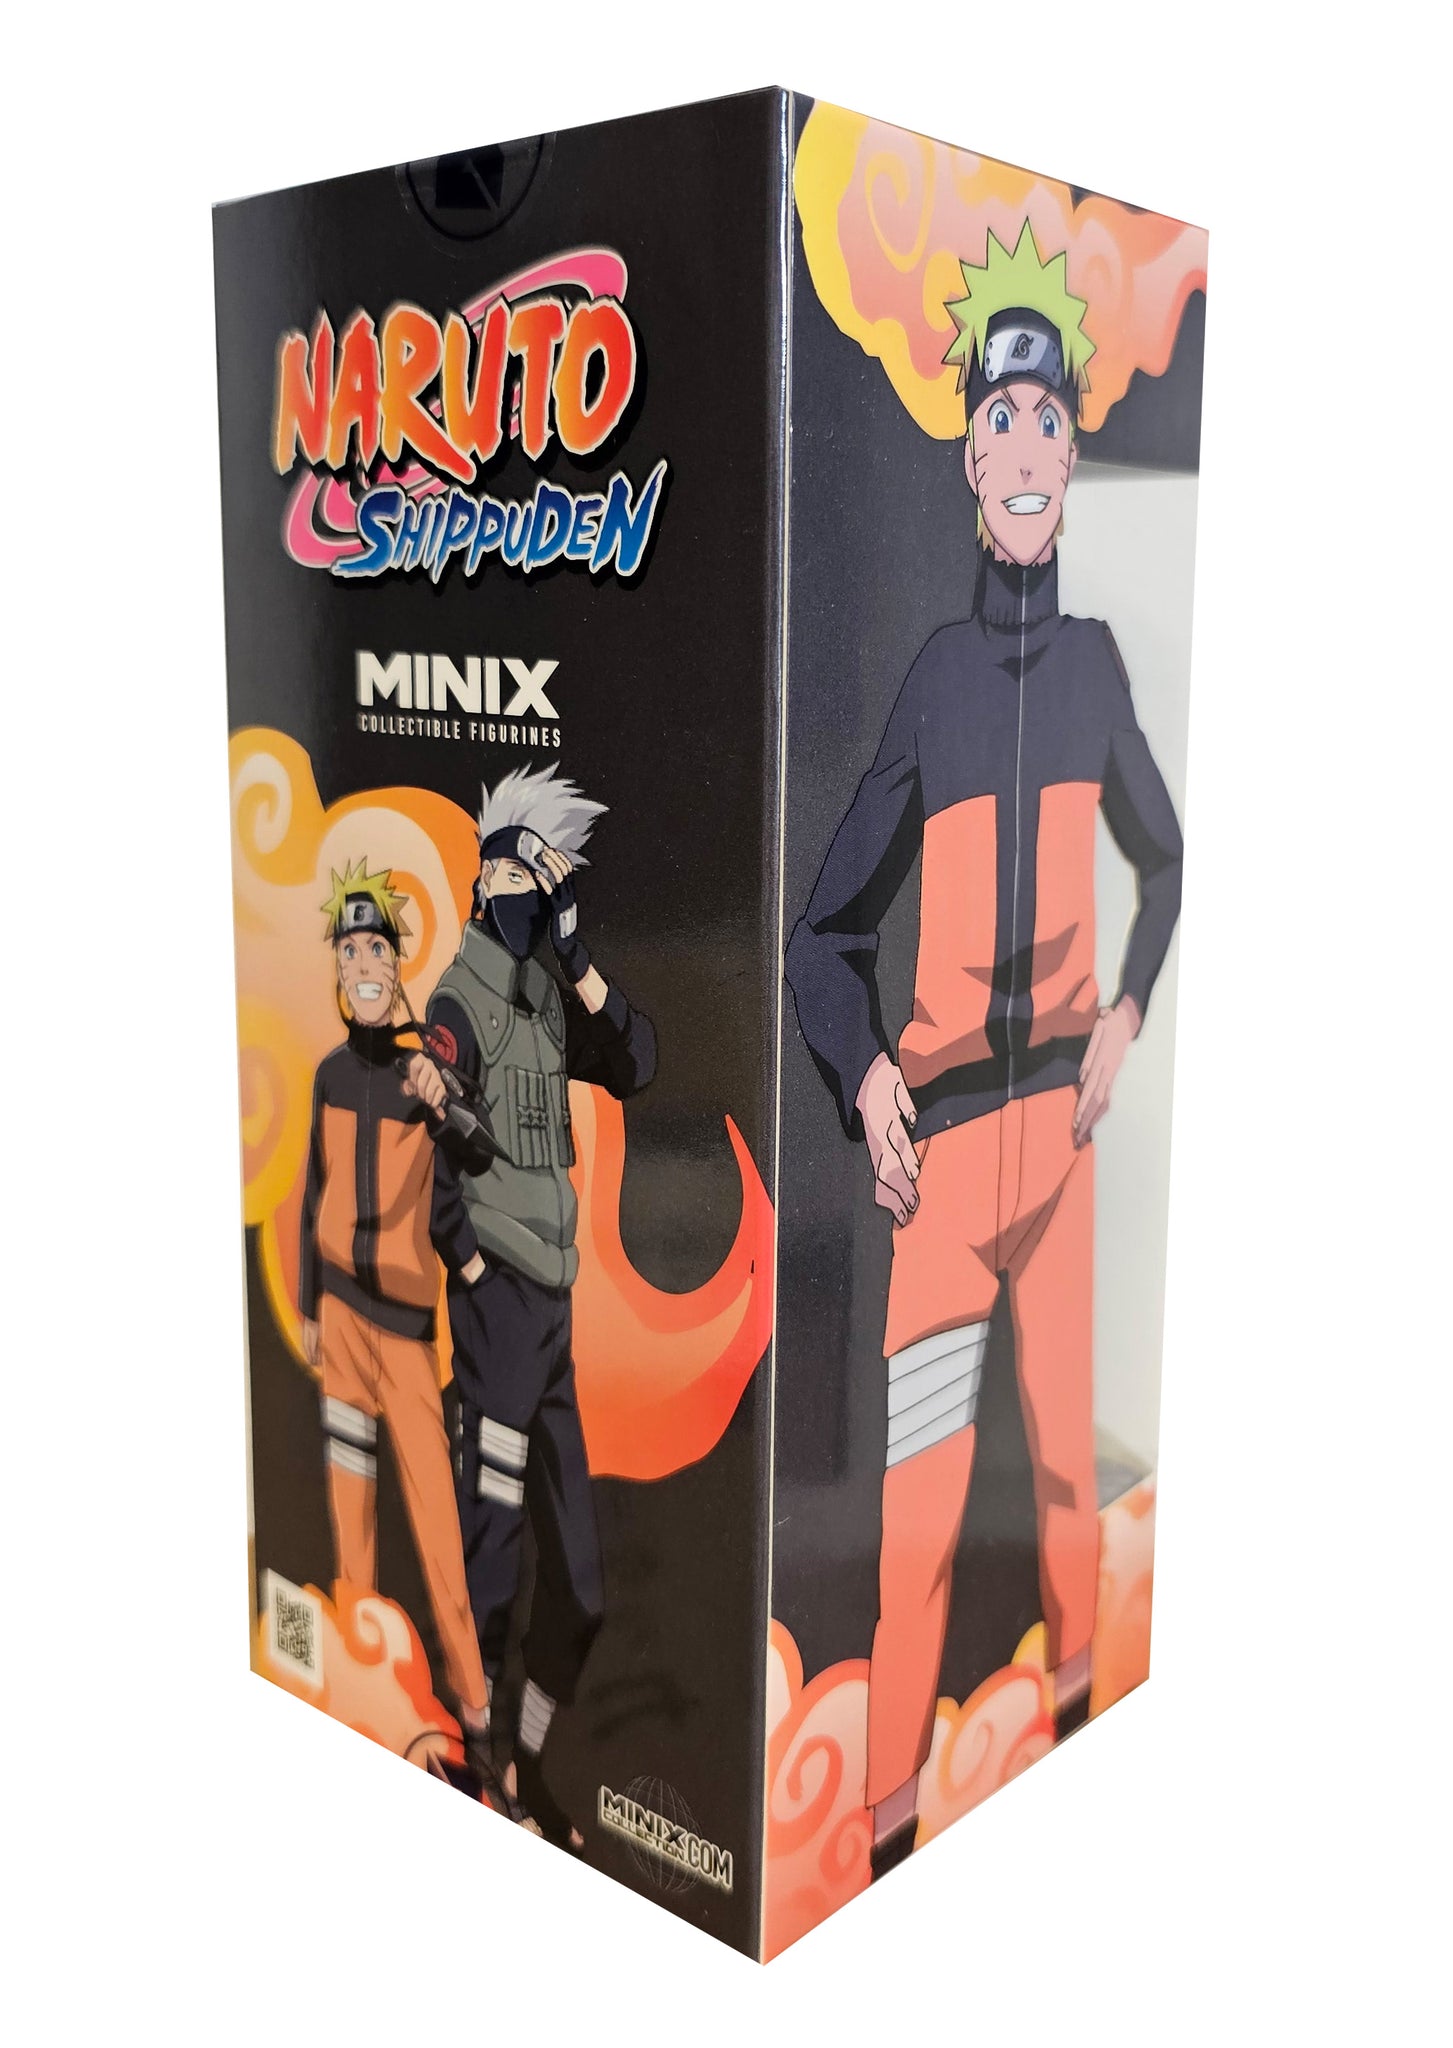 Minix Collectible Naruto Figures